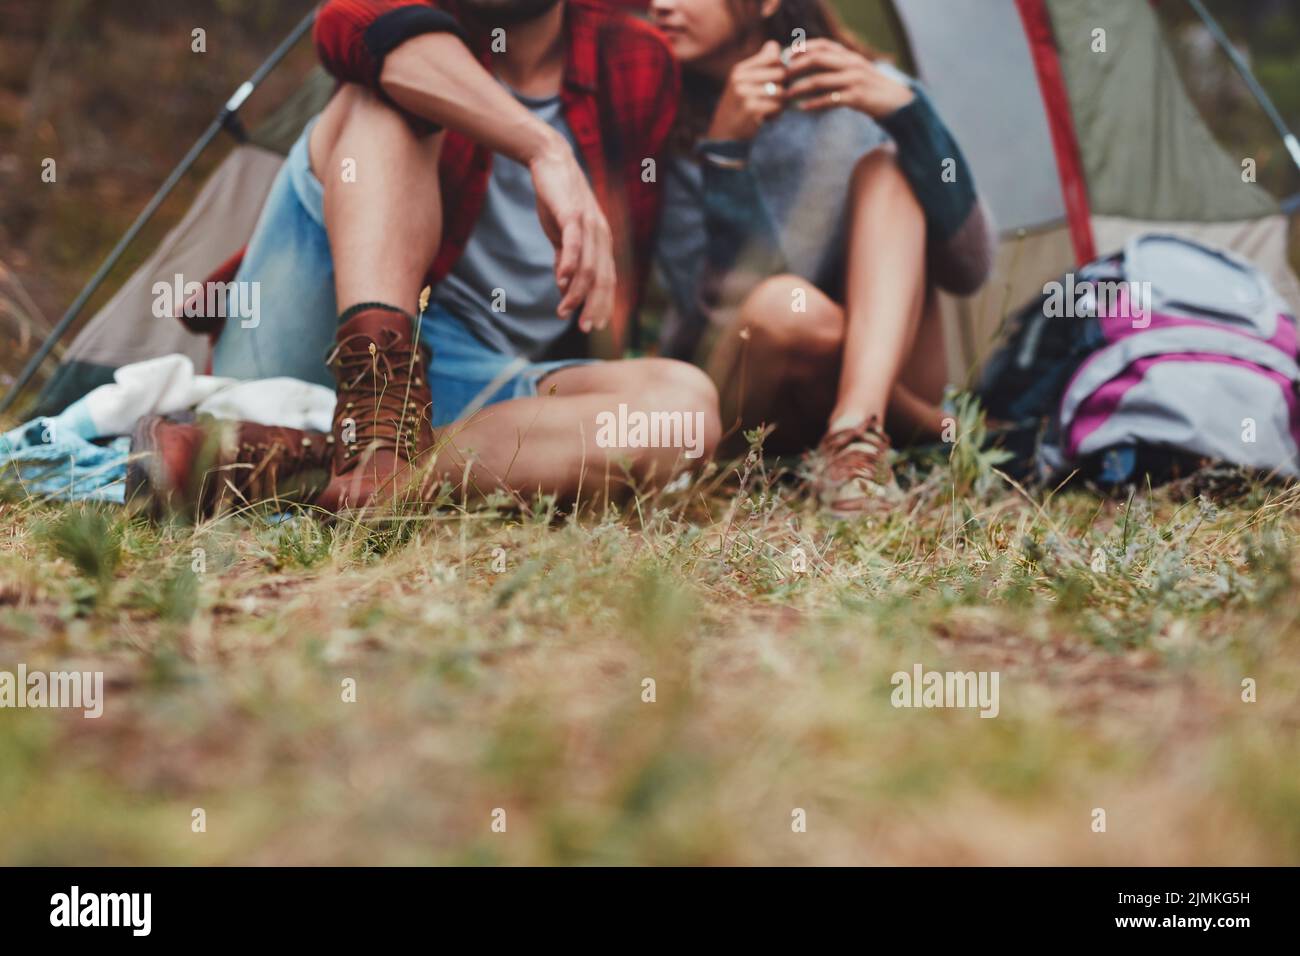 Romantisches junges Paar, das vor einem Campingzelt sitzt. Abenteuerliches junges Paar, das gemeinsam ihren Campingurlaub genießt. Stockfoto